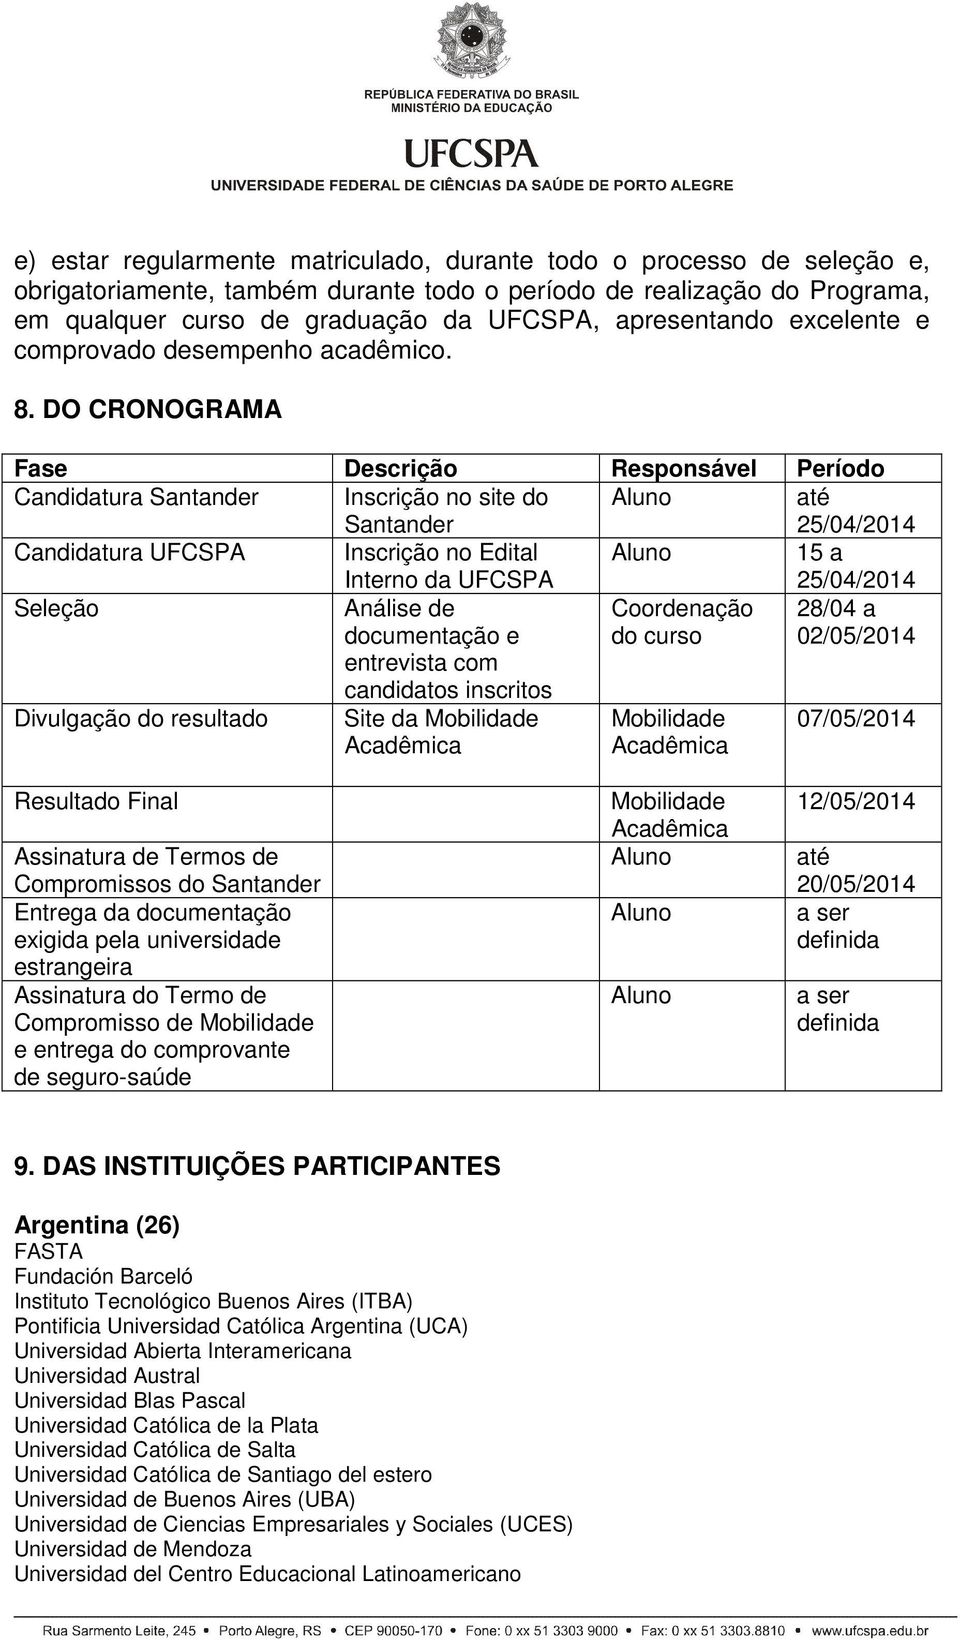 DO CRONOGRAMA Fase Descrição Responsável Período Candidatura Santander Inscrição no site do Santander Aluno até 25/04/2014 Candidatura UFCSPA Inscrição no Edital Interno da UFCSPA Aluno 15 a